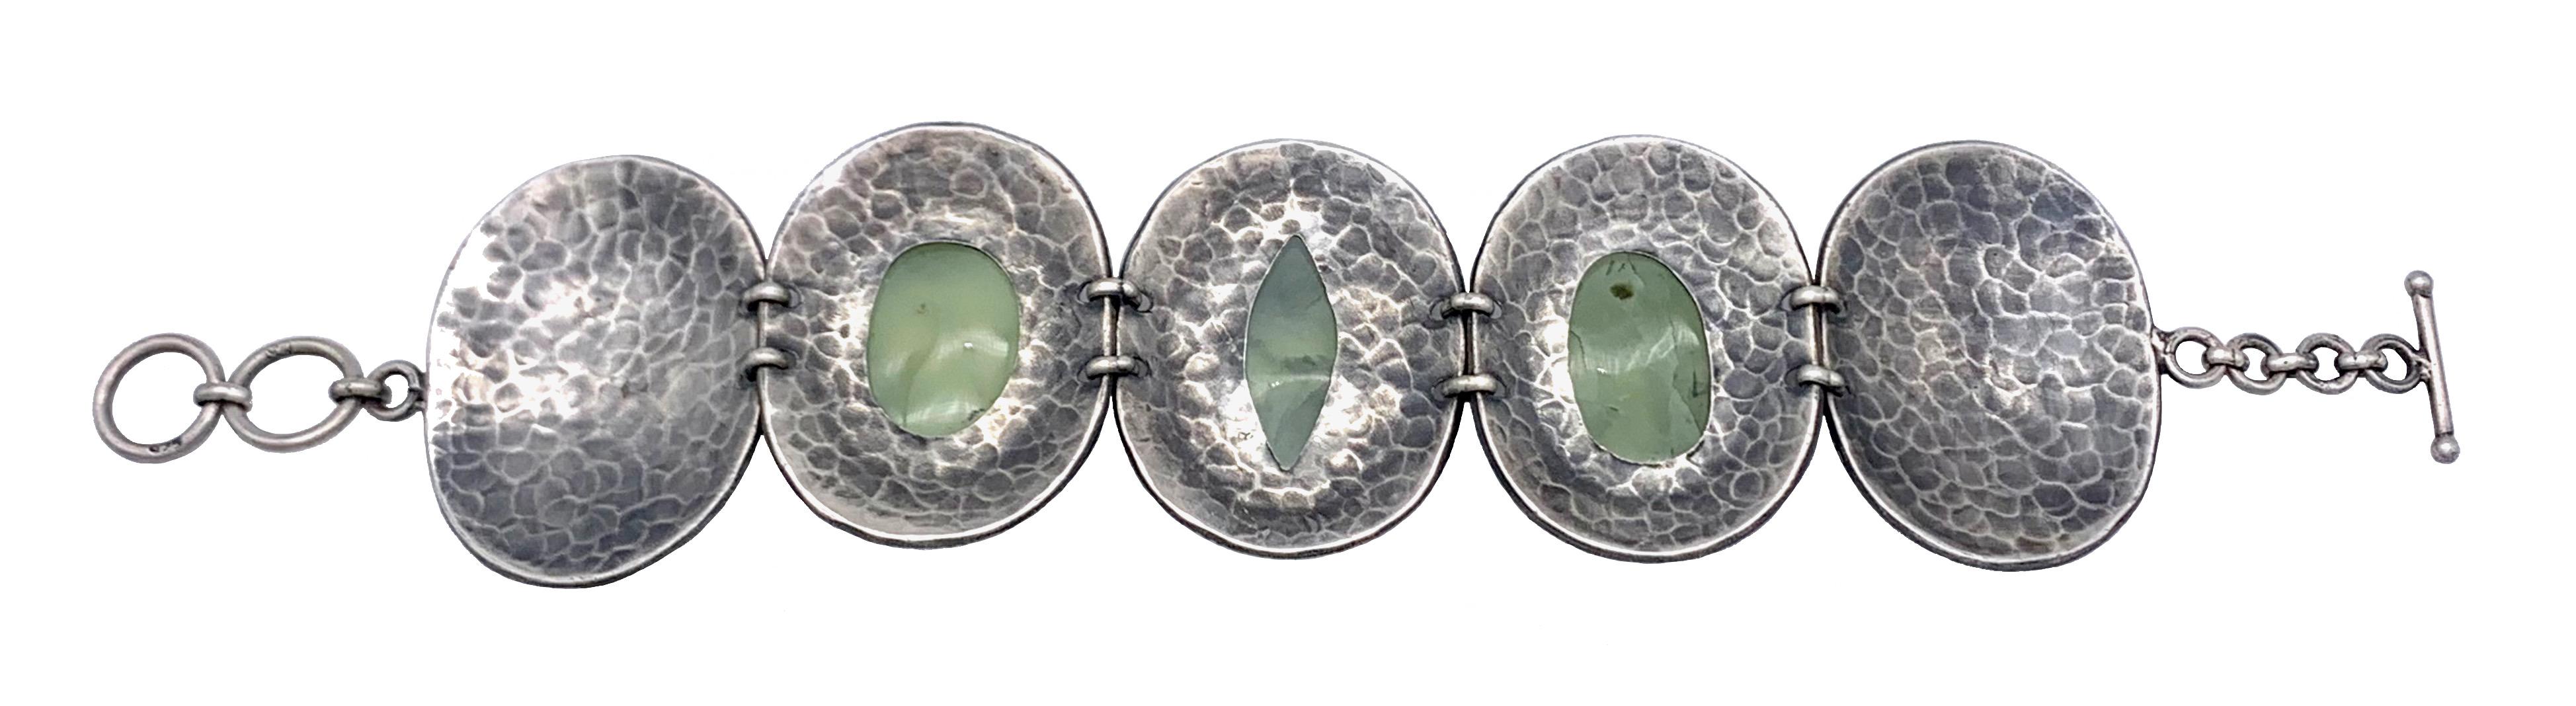 Ce magnifique bracelet en argent massif est serti de trois pierres dures vertes non identifiées. La pierre centrale a la forme d'un œil, de chaque côté se trouvent deux pierres ovales, toutes taillées en cabochon.
Les pierres sont montées dans de